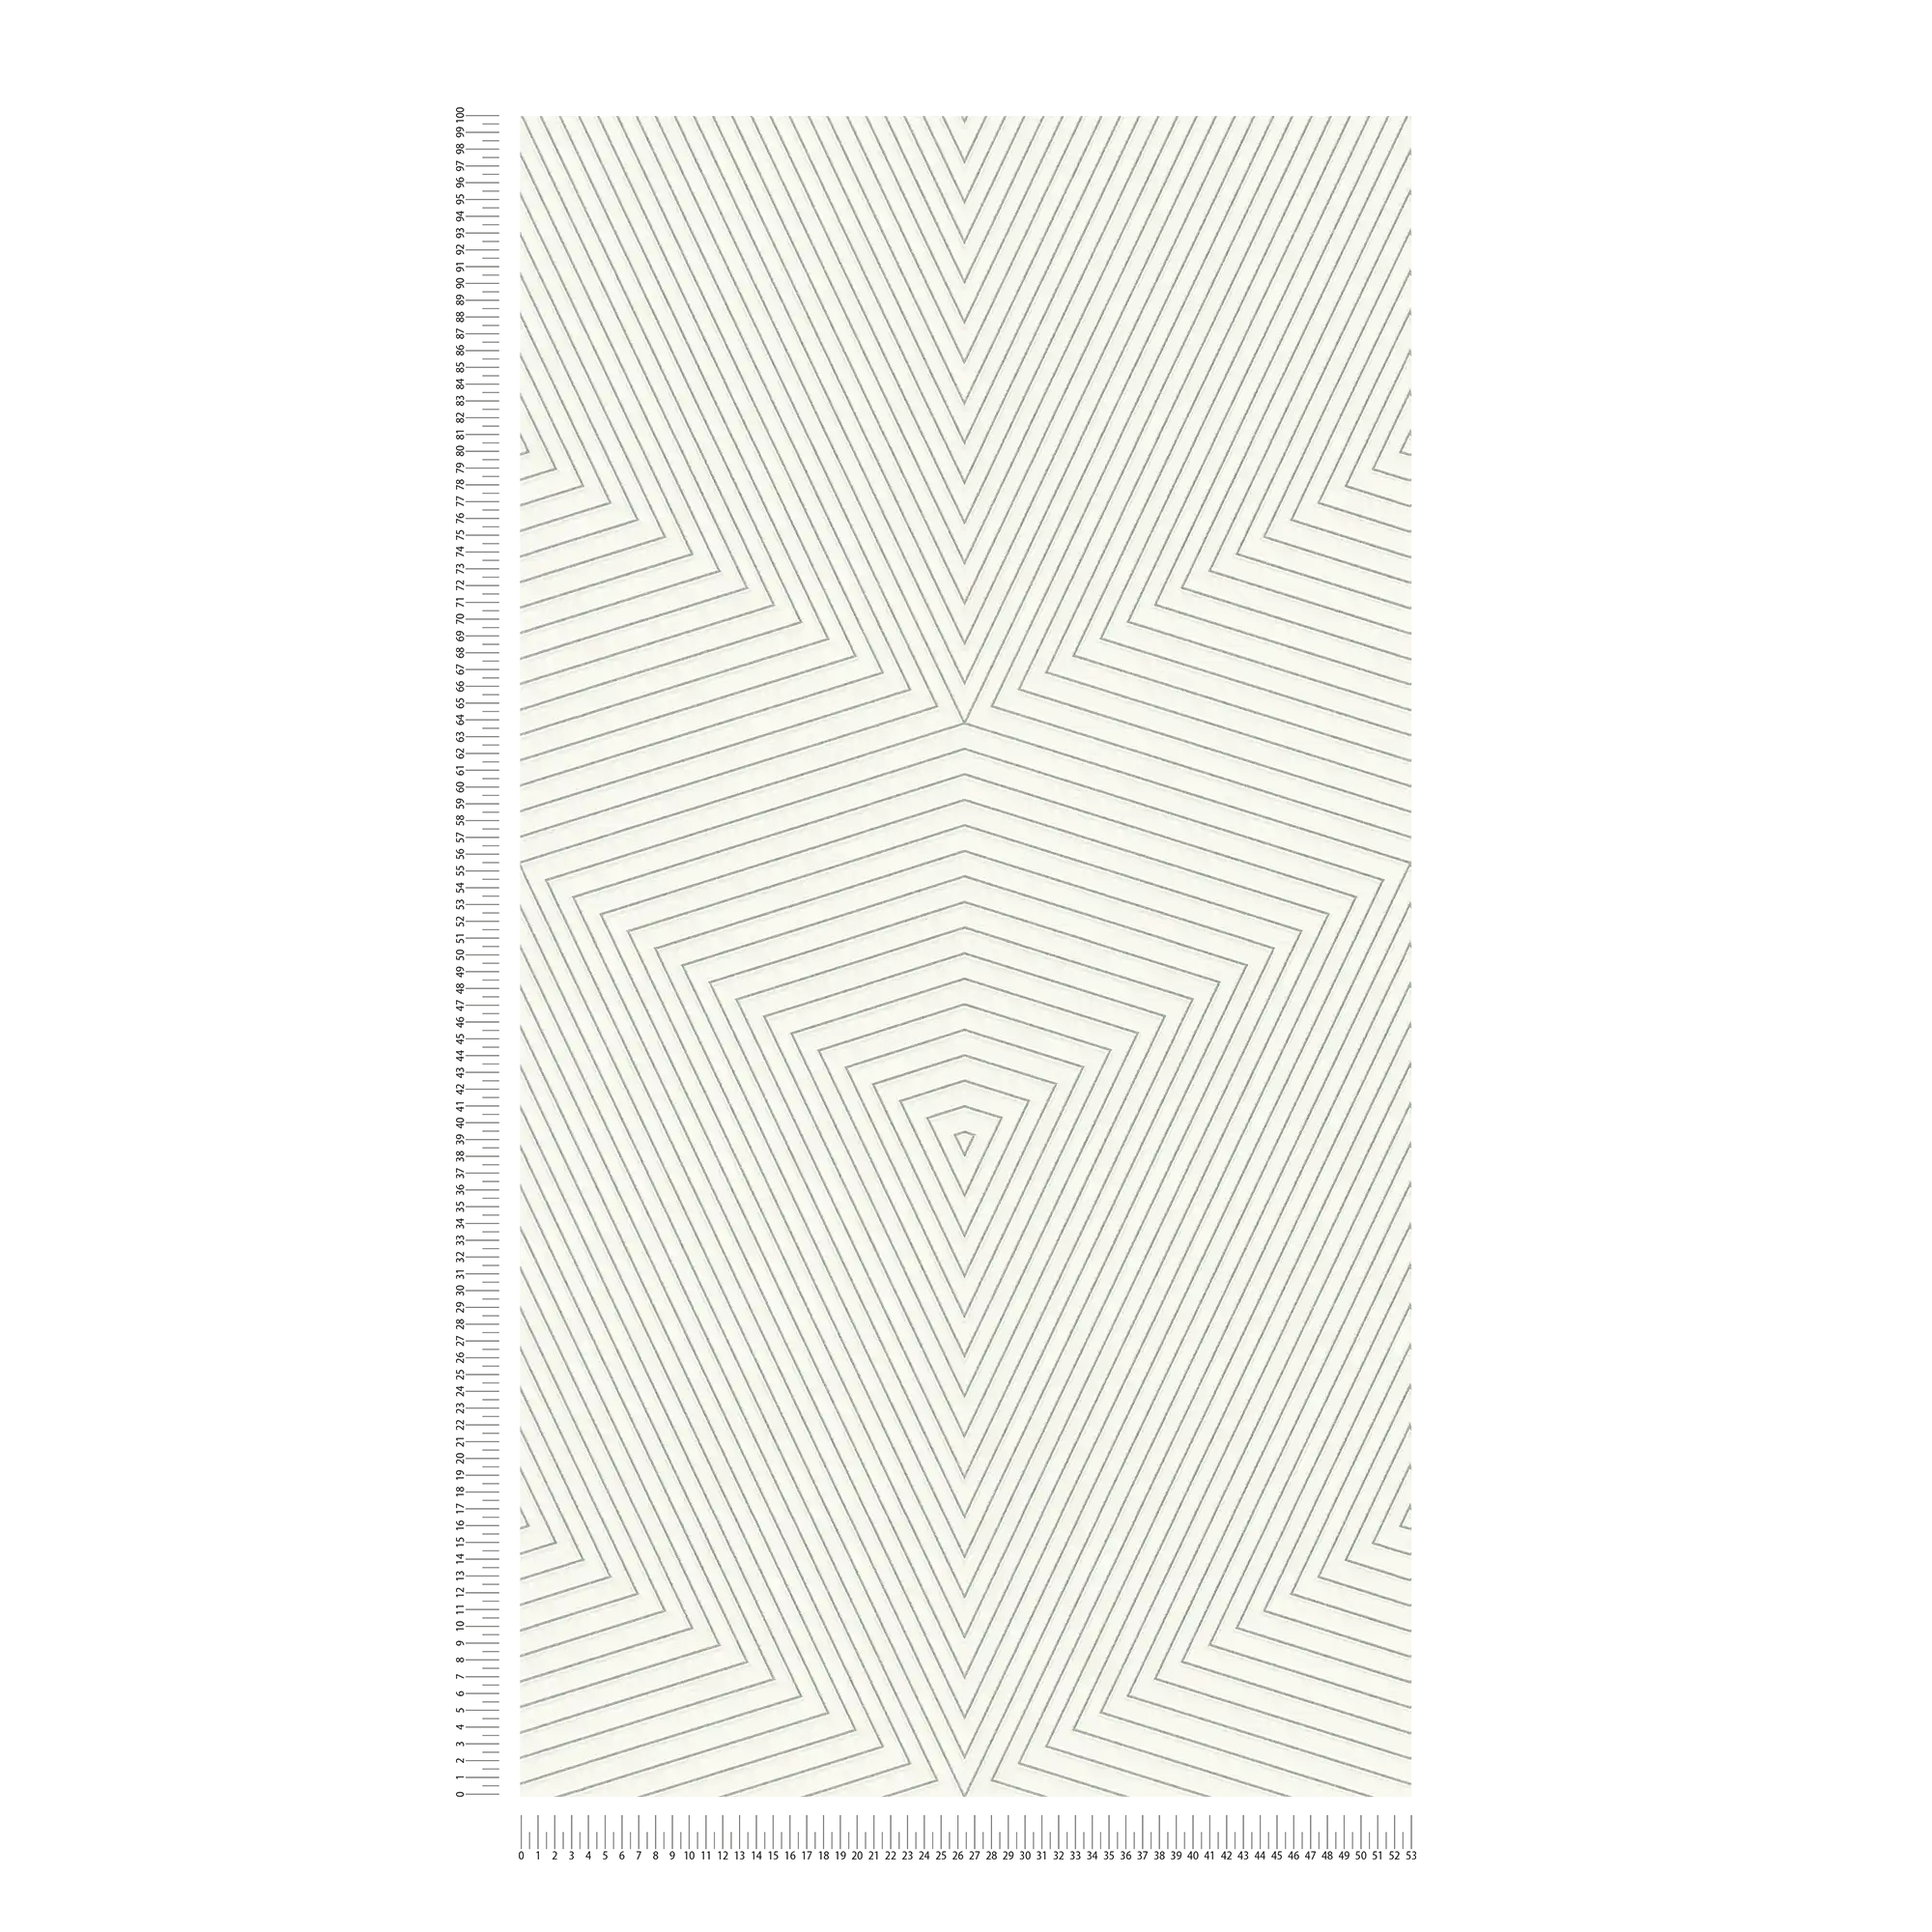             Carta da parati con disegno a linee ed effetto metallizzato - bianco, argento
        